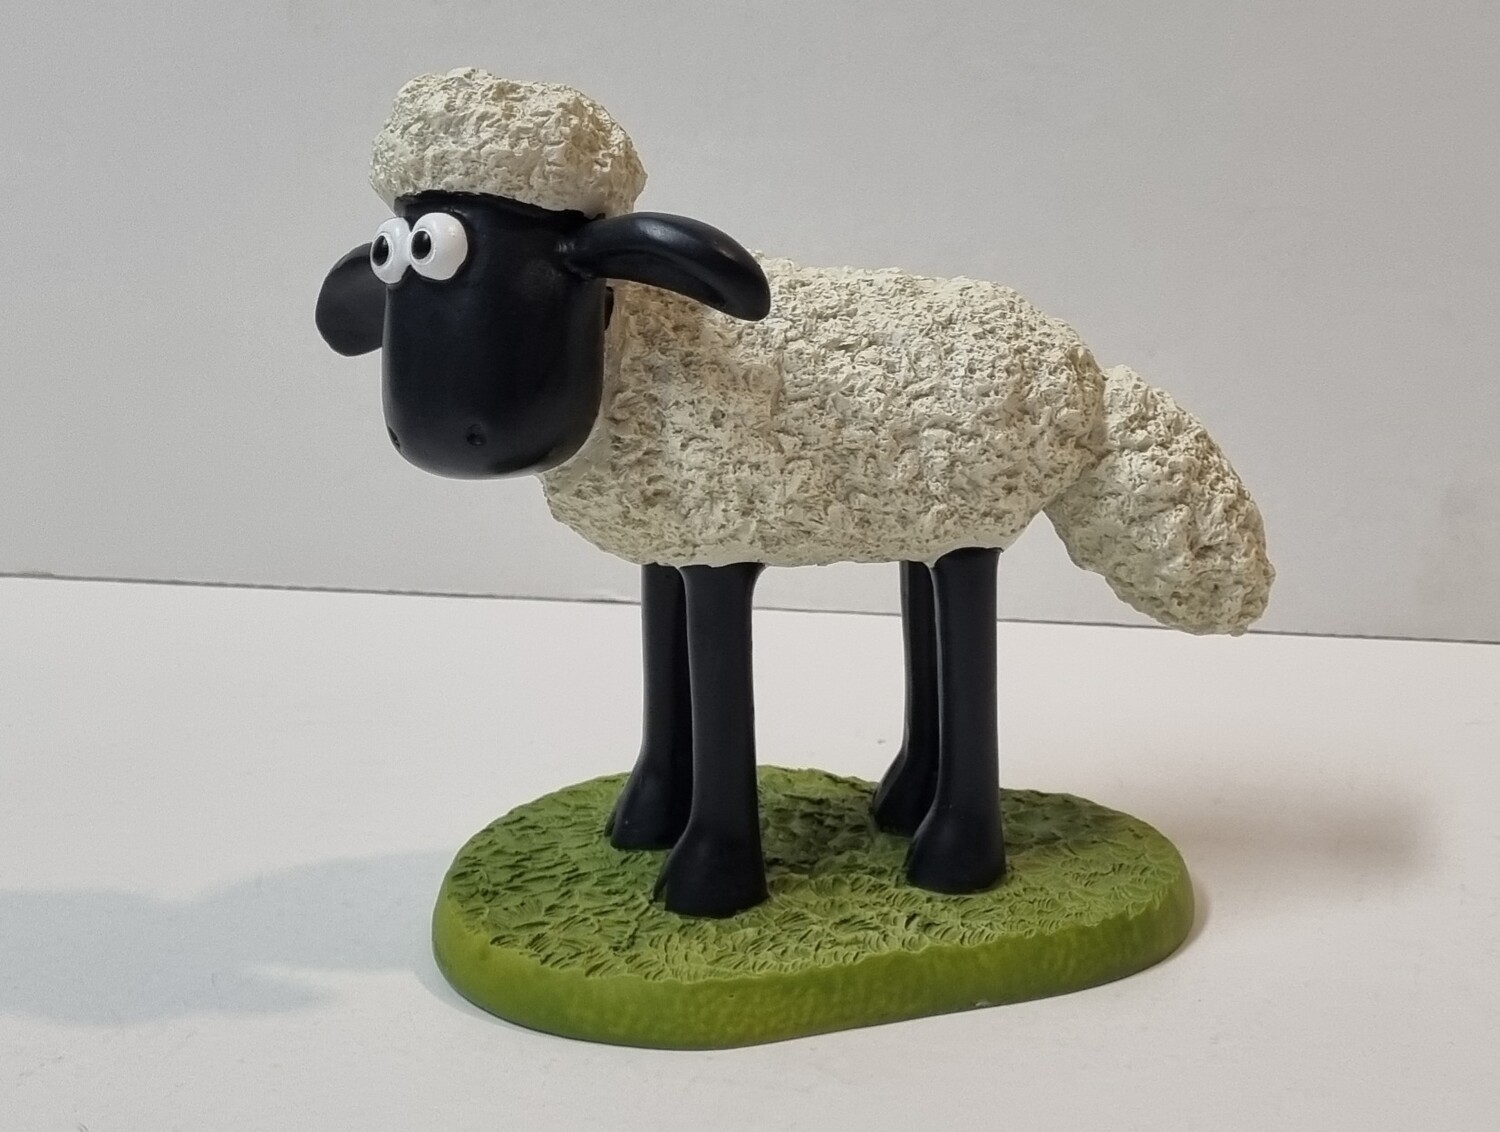 Beeldje, Shaun Standing, Shaun the Sheep